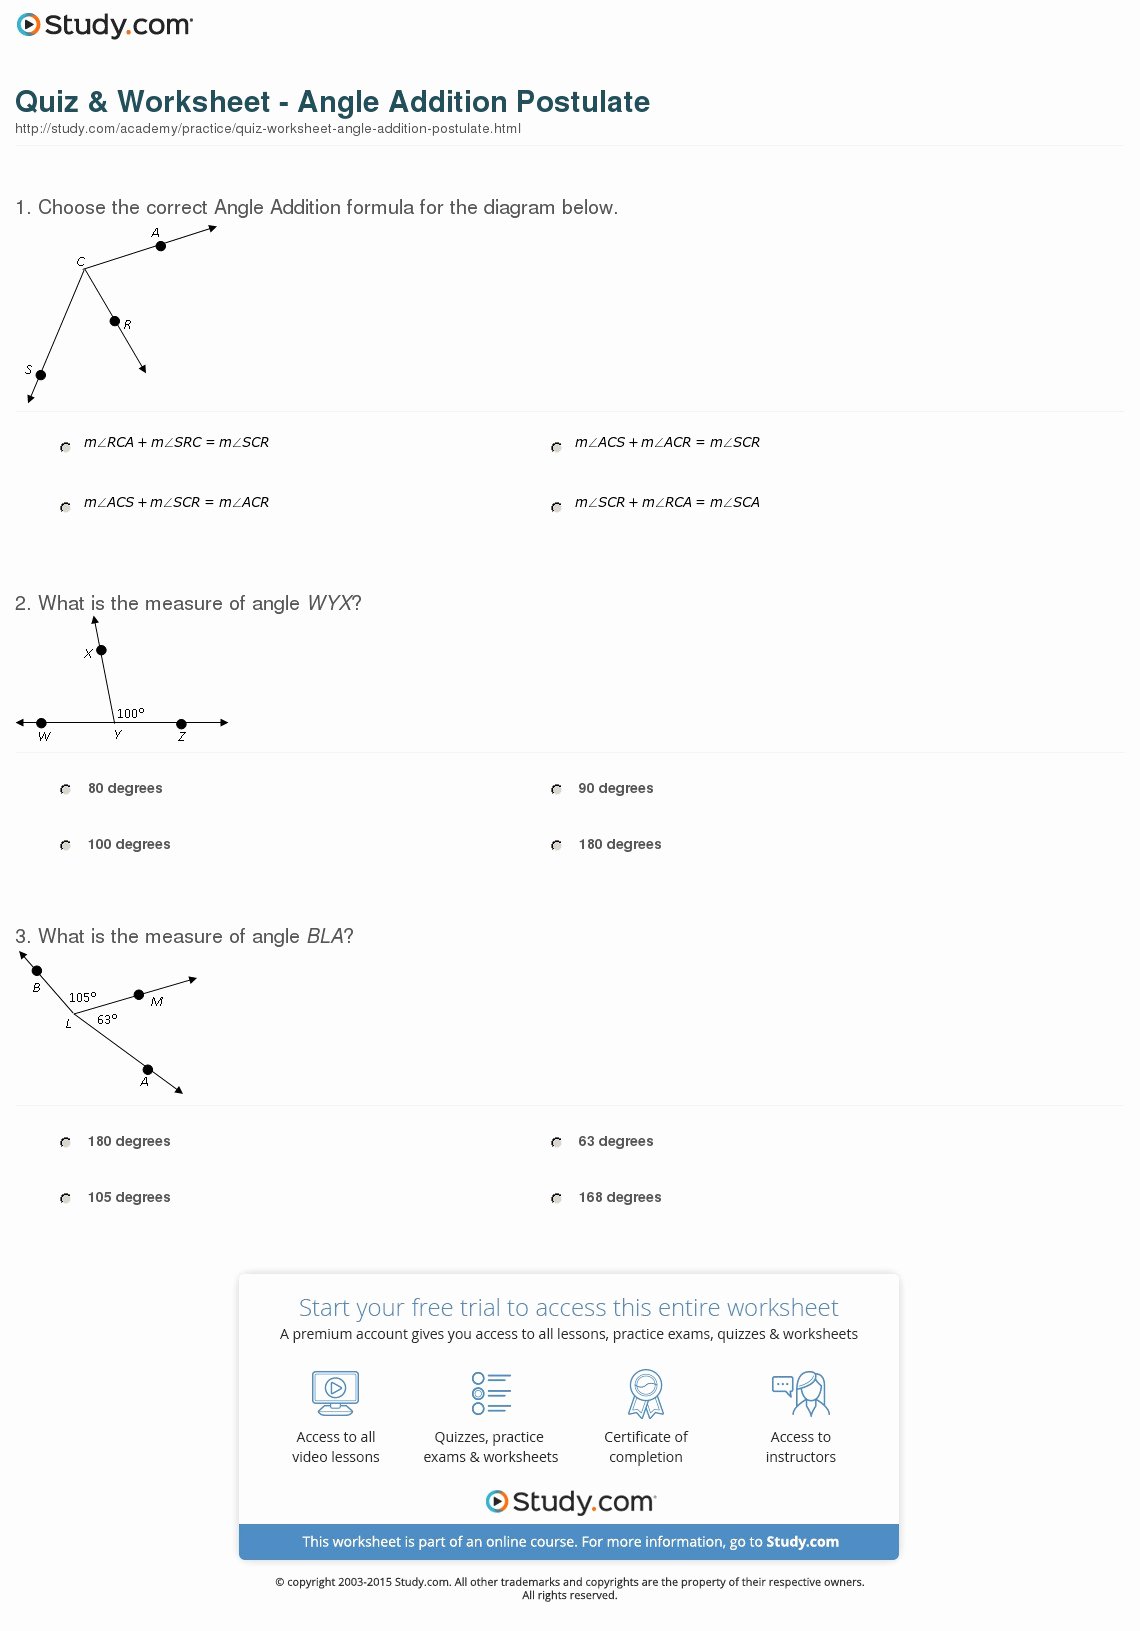 Angle Addition Postulate Worksheet Beautiful Quiz &amp; Worksheet Angle Addition Postulate